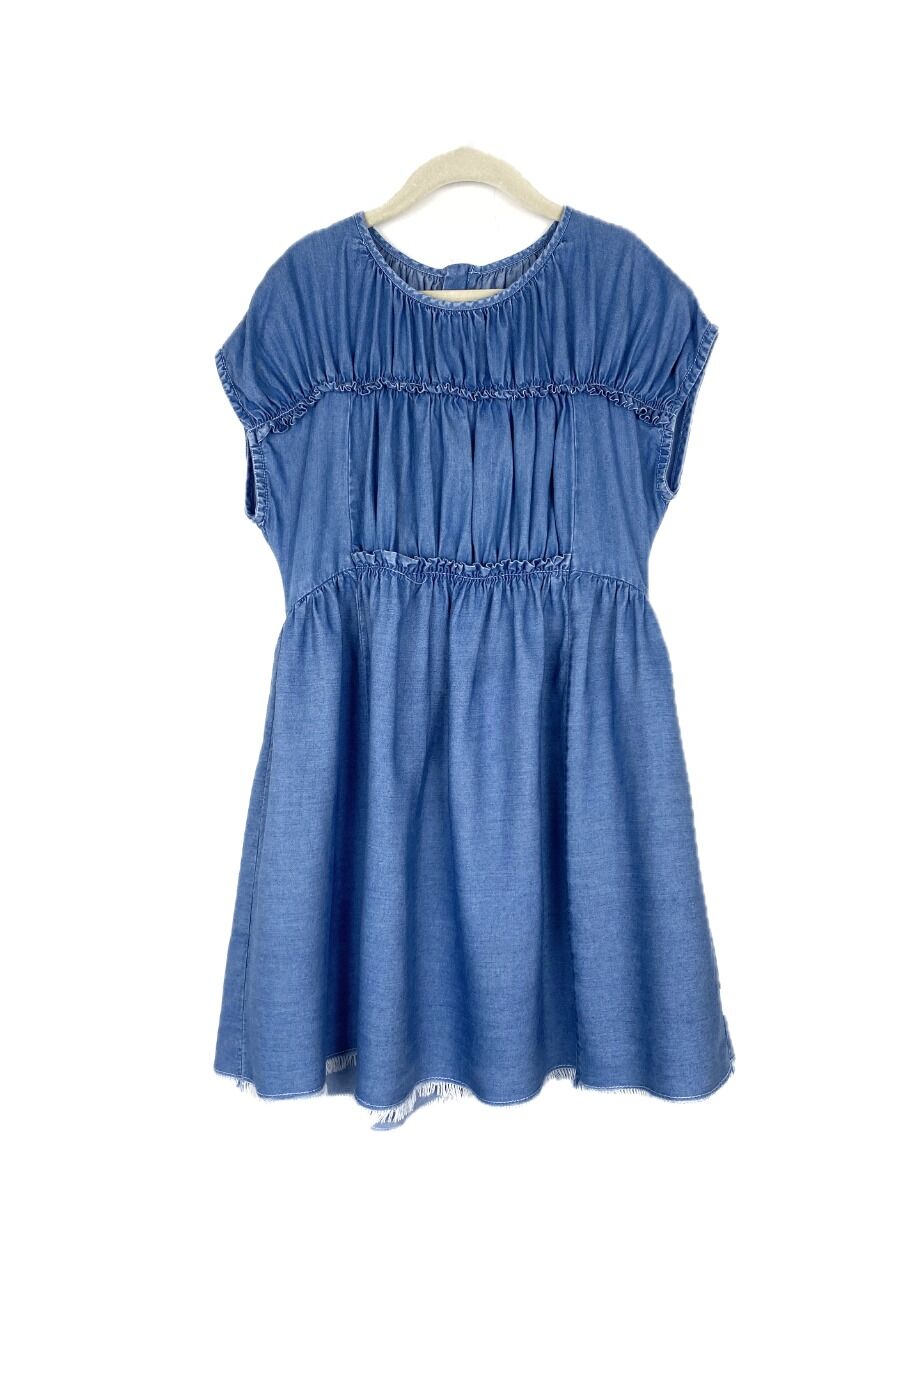 image 1 Детское платье голубого цвета с драпировкой